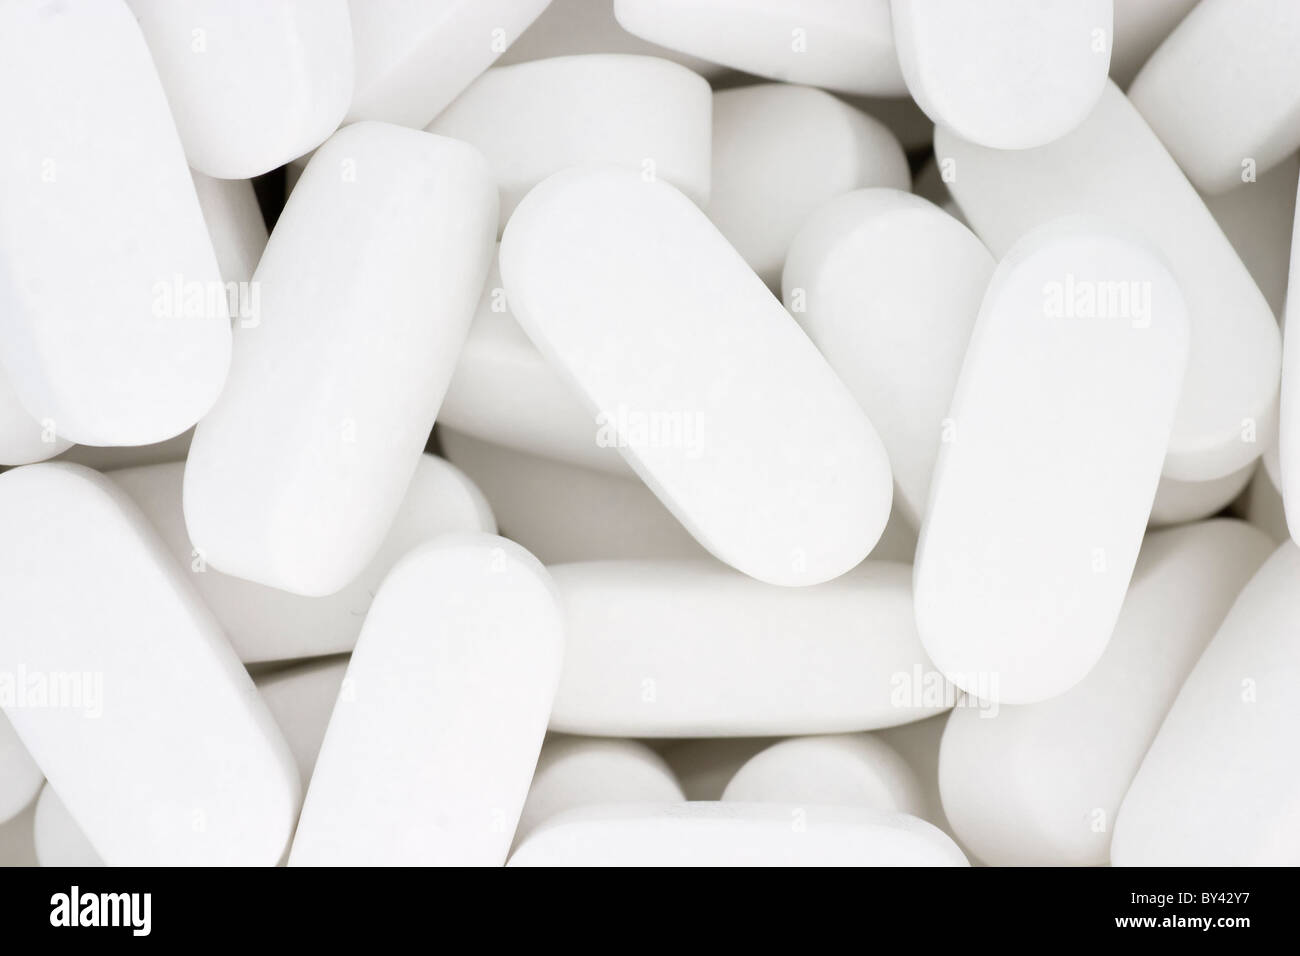 White calcium-magnesium supplement tablets Stock Photo